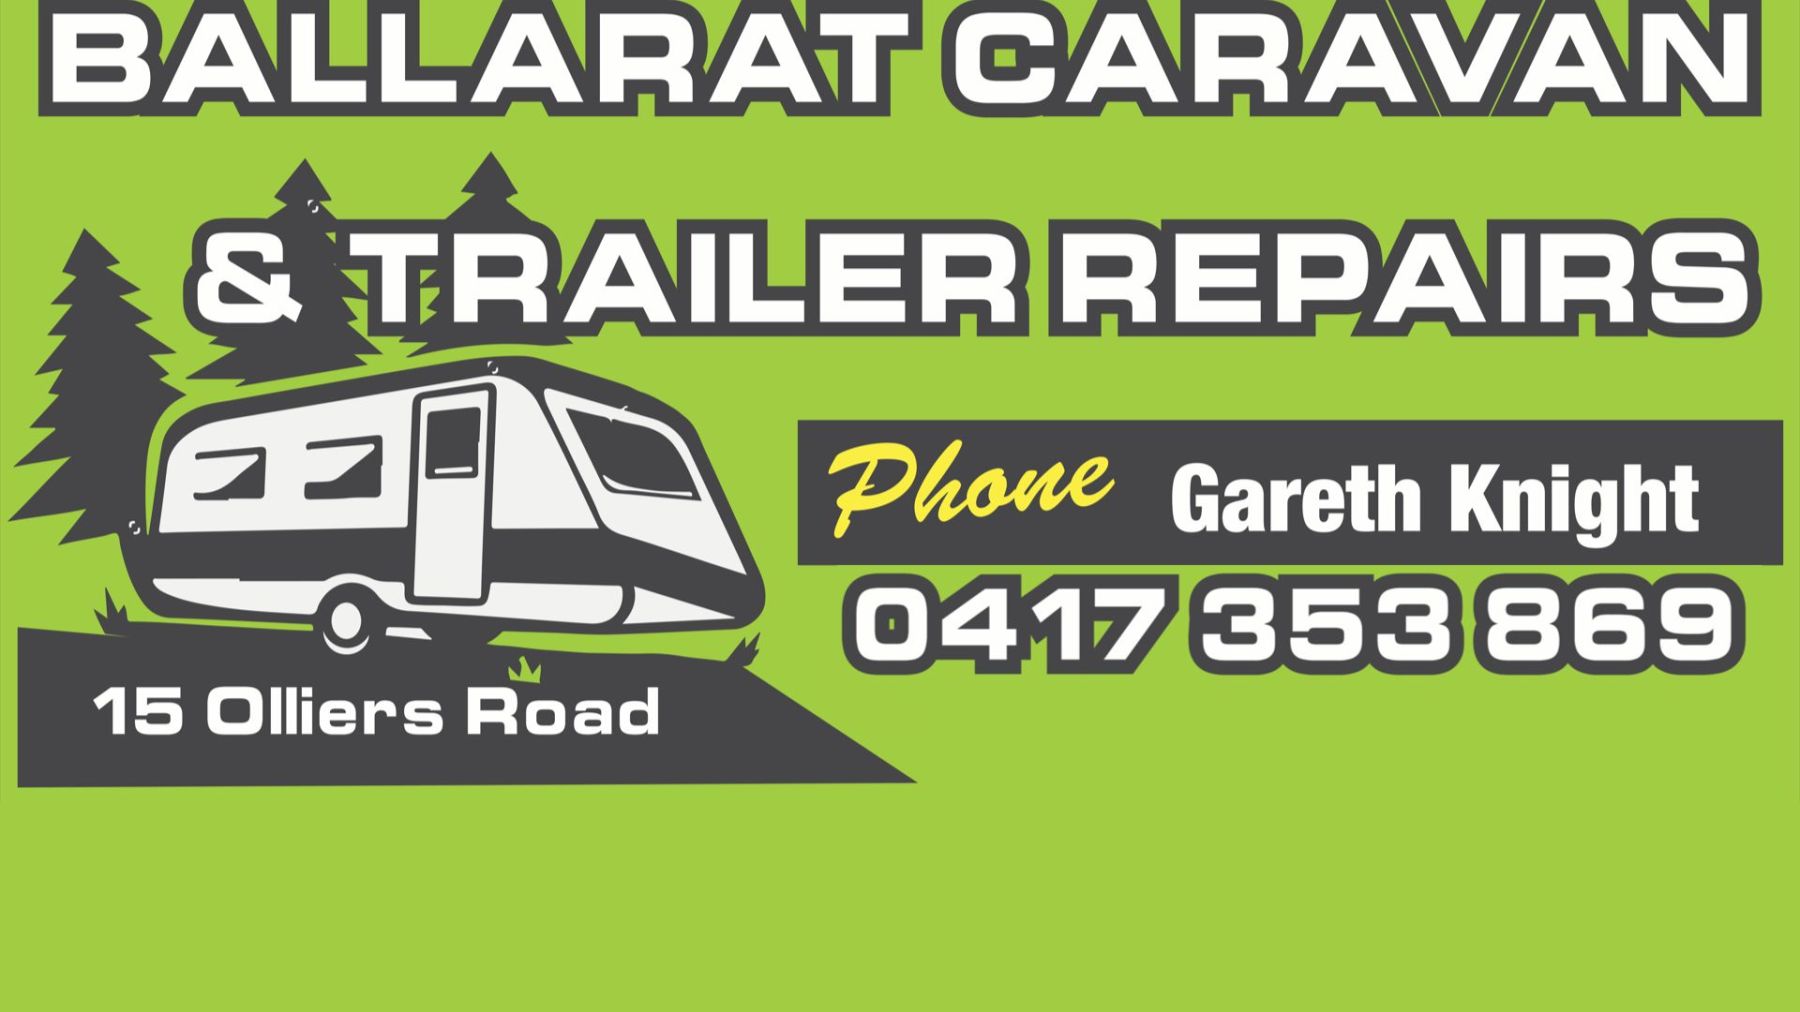 Ballarat Caravan and Trailer Repairs